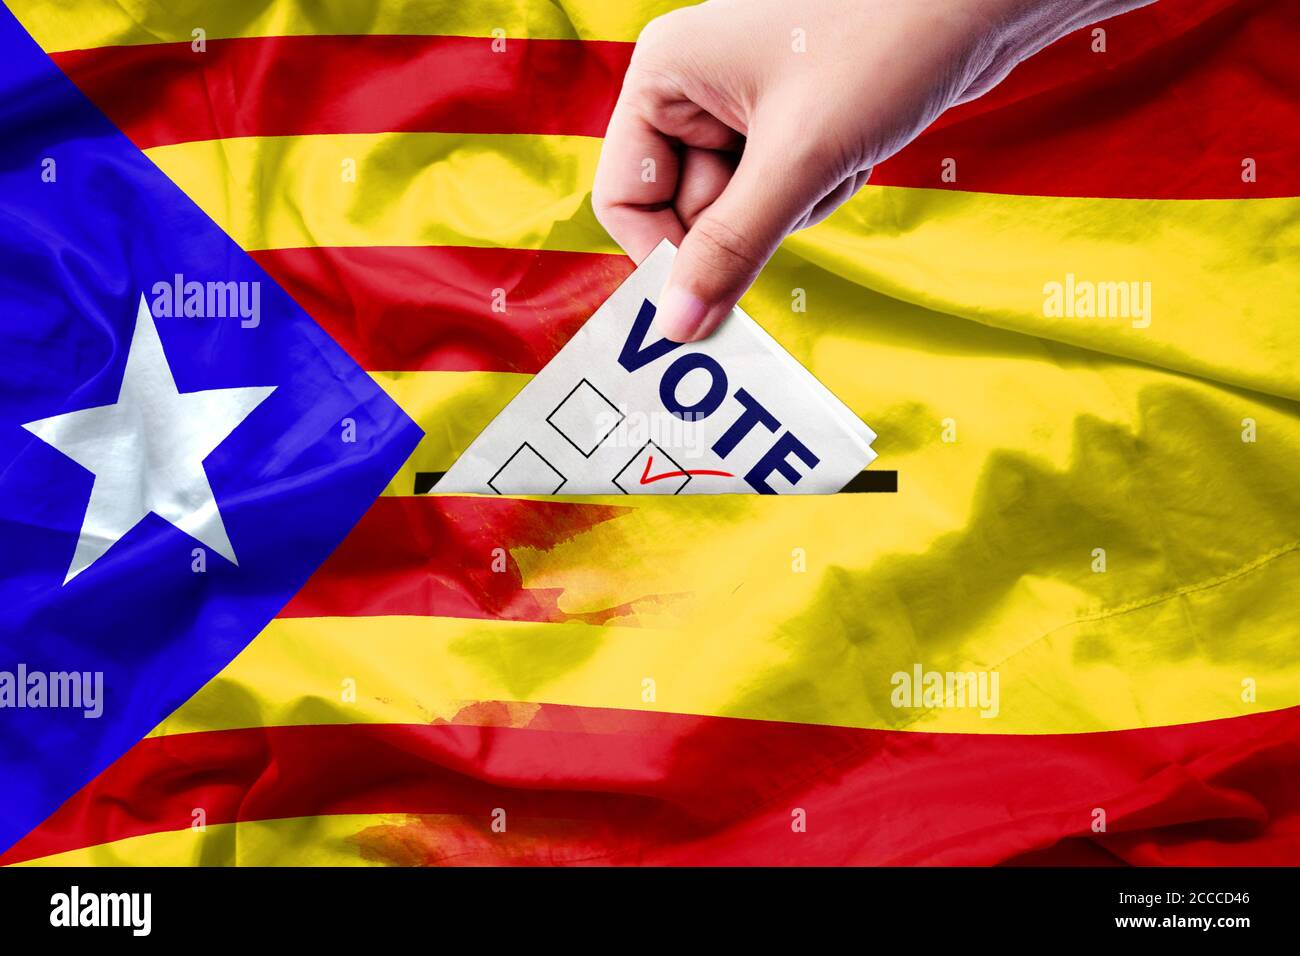 Abstimmung Referendum für Katalonien Unabhängigkeitsausstieg nationale Krise Separatismus Risiko : Nahaufnahme einer Person, die während der Abstimmung bei den Wahlen eine Stimme abgeben Stockfoto